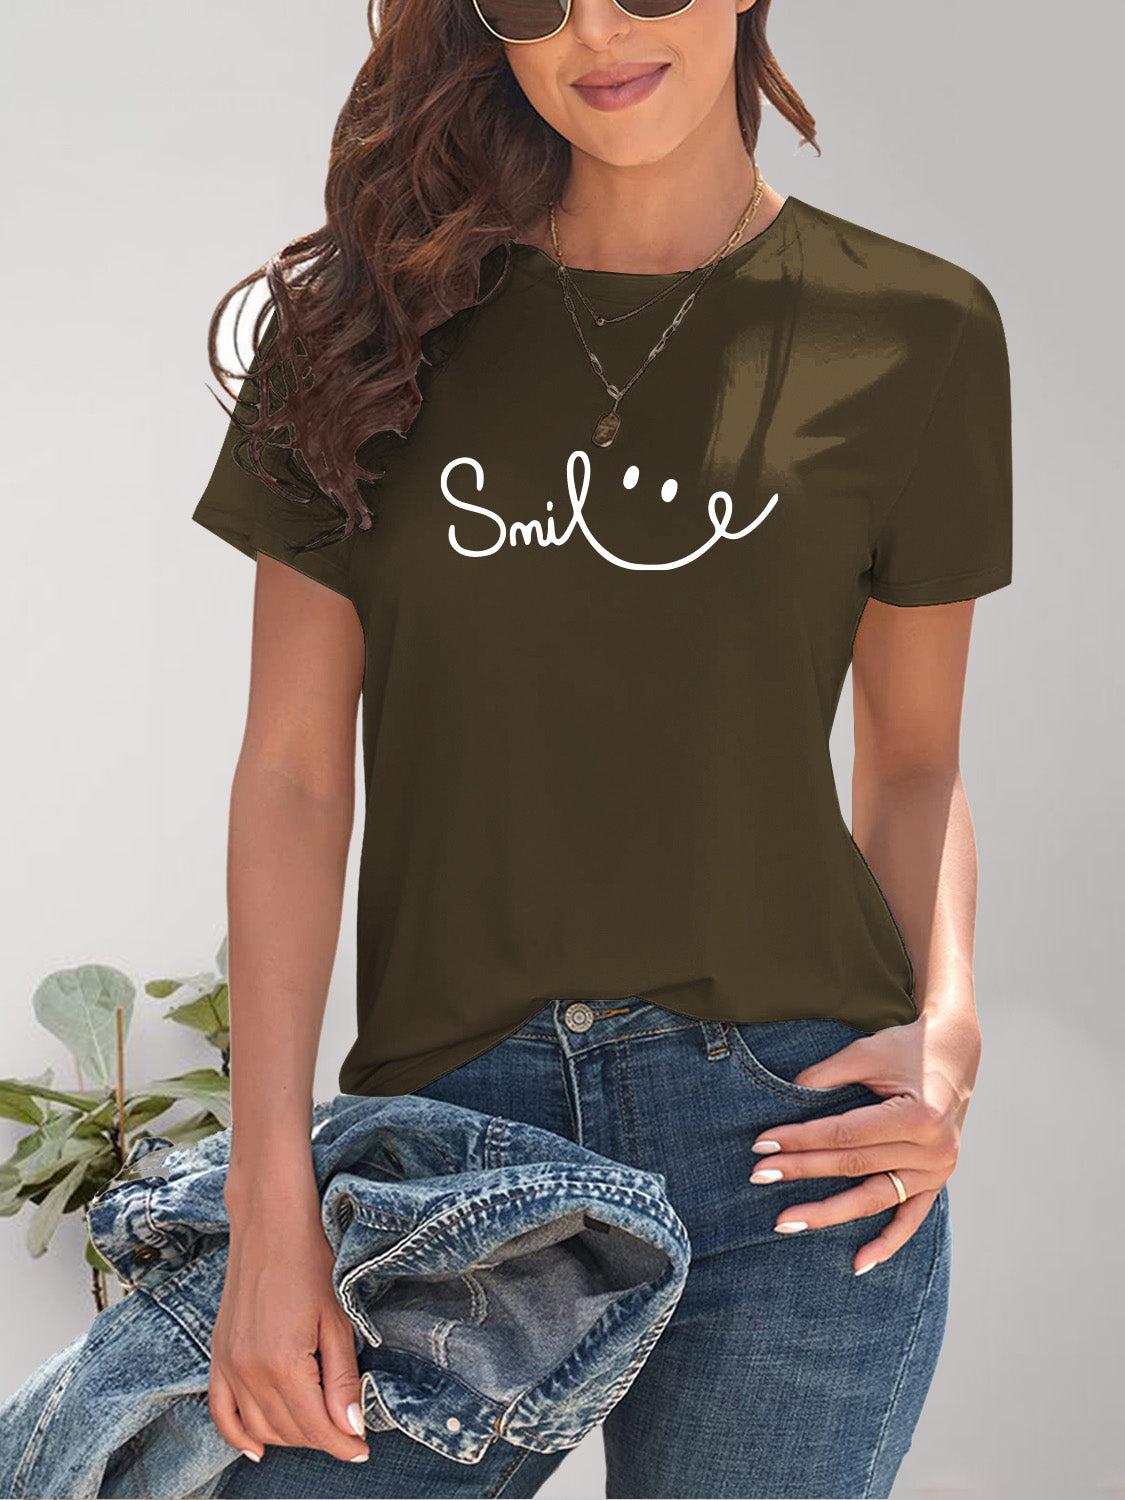 SMILE Round Neck Short Sleeve T-Shirt